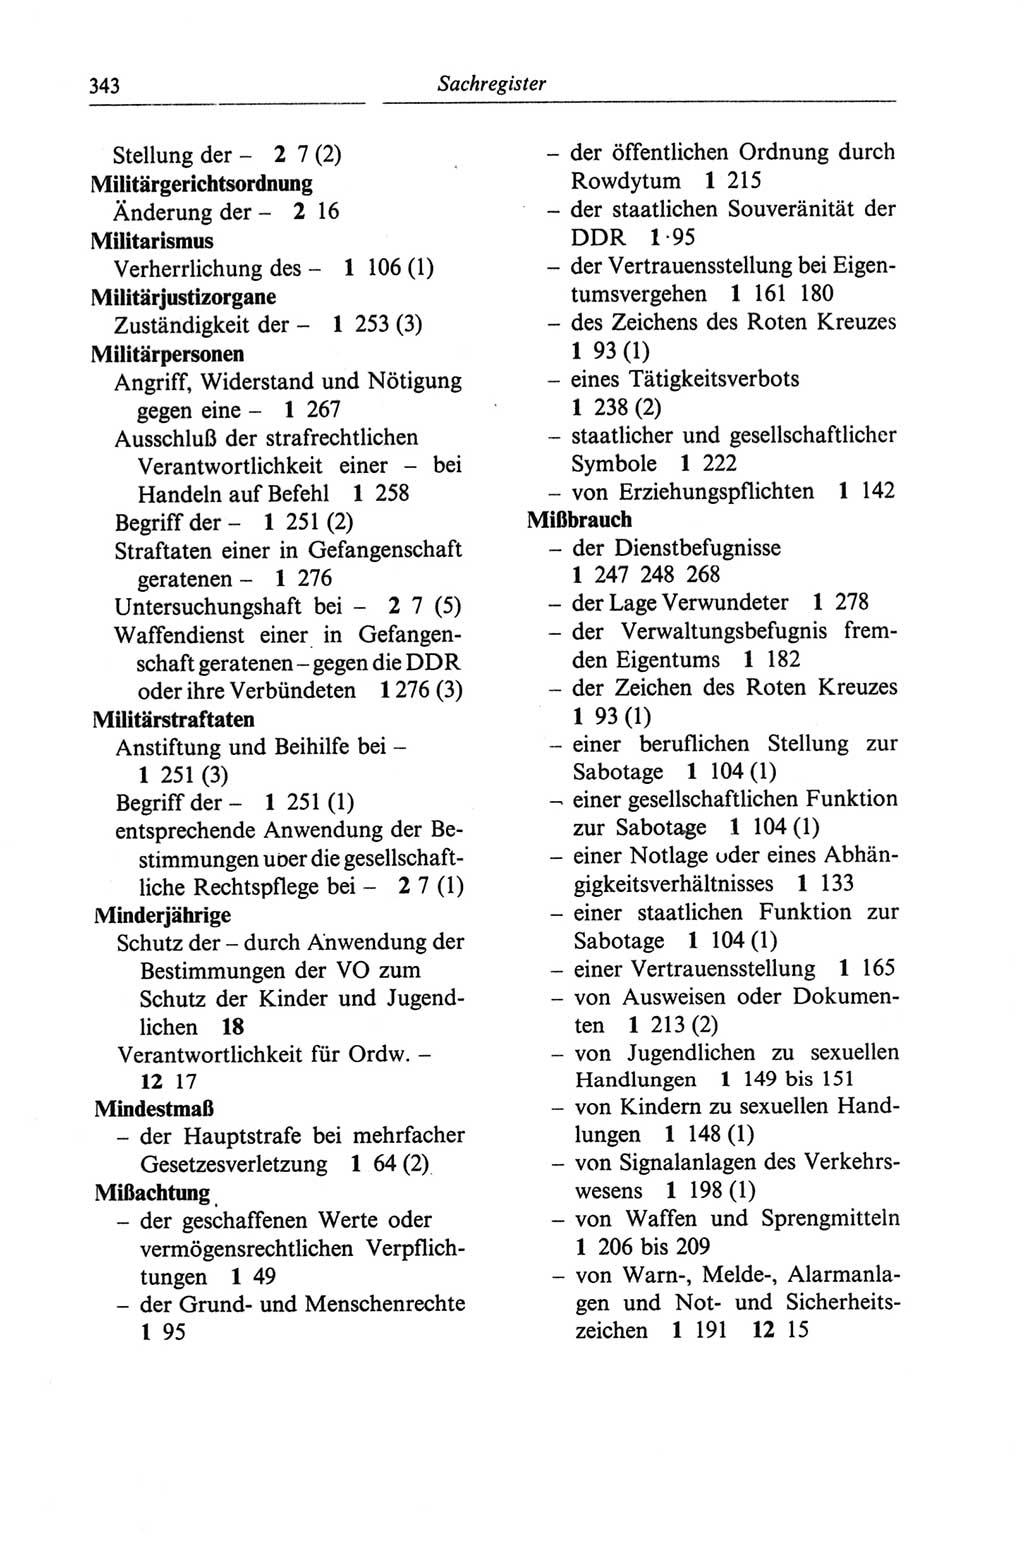 Strafgesetzbuch (StGB) der Deutschen Demokratischen Republik (DDR) und angrenzende Gesetze und Bestimmungen 1968, Seite 343 (StGB Ges. Best. DDR 1968, S. 343)